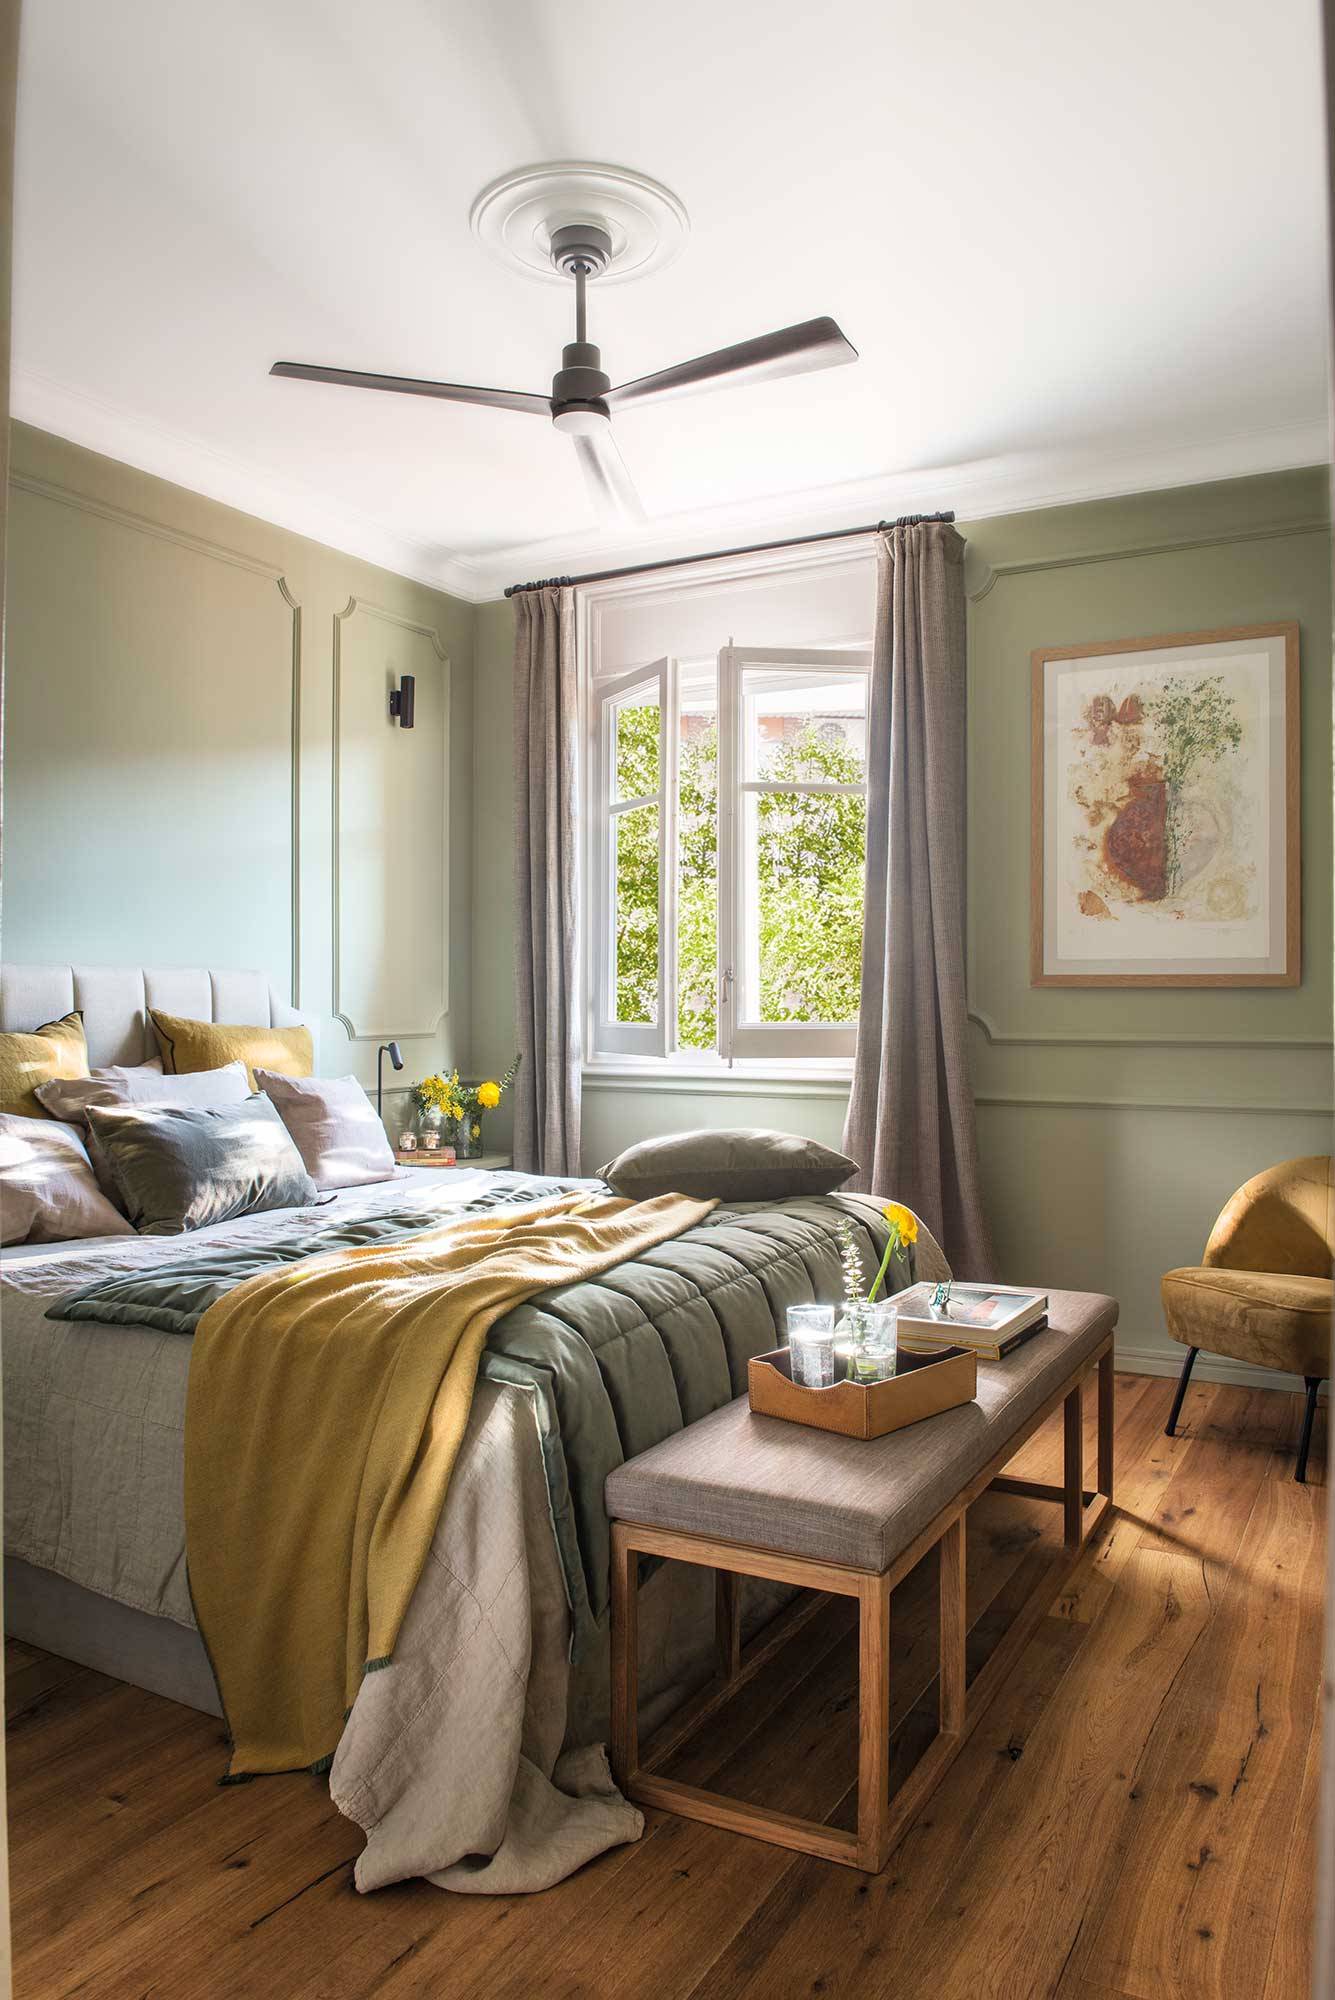 Dormitorio con molduras en la pared y tonos verdes_00500538